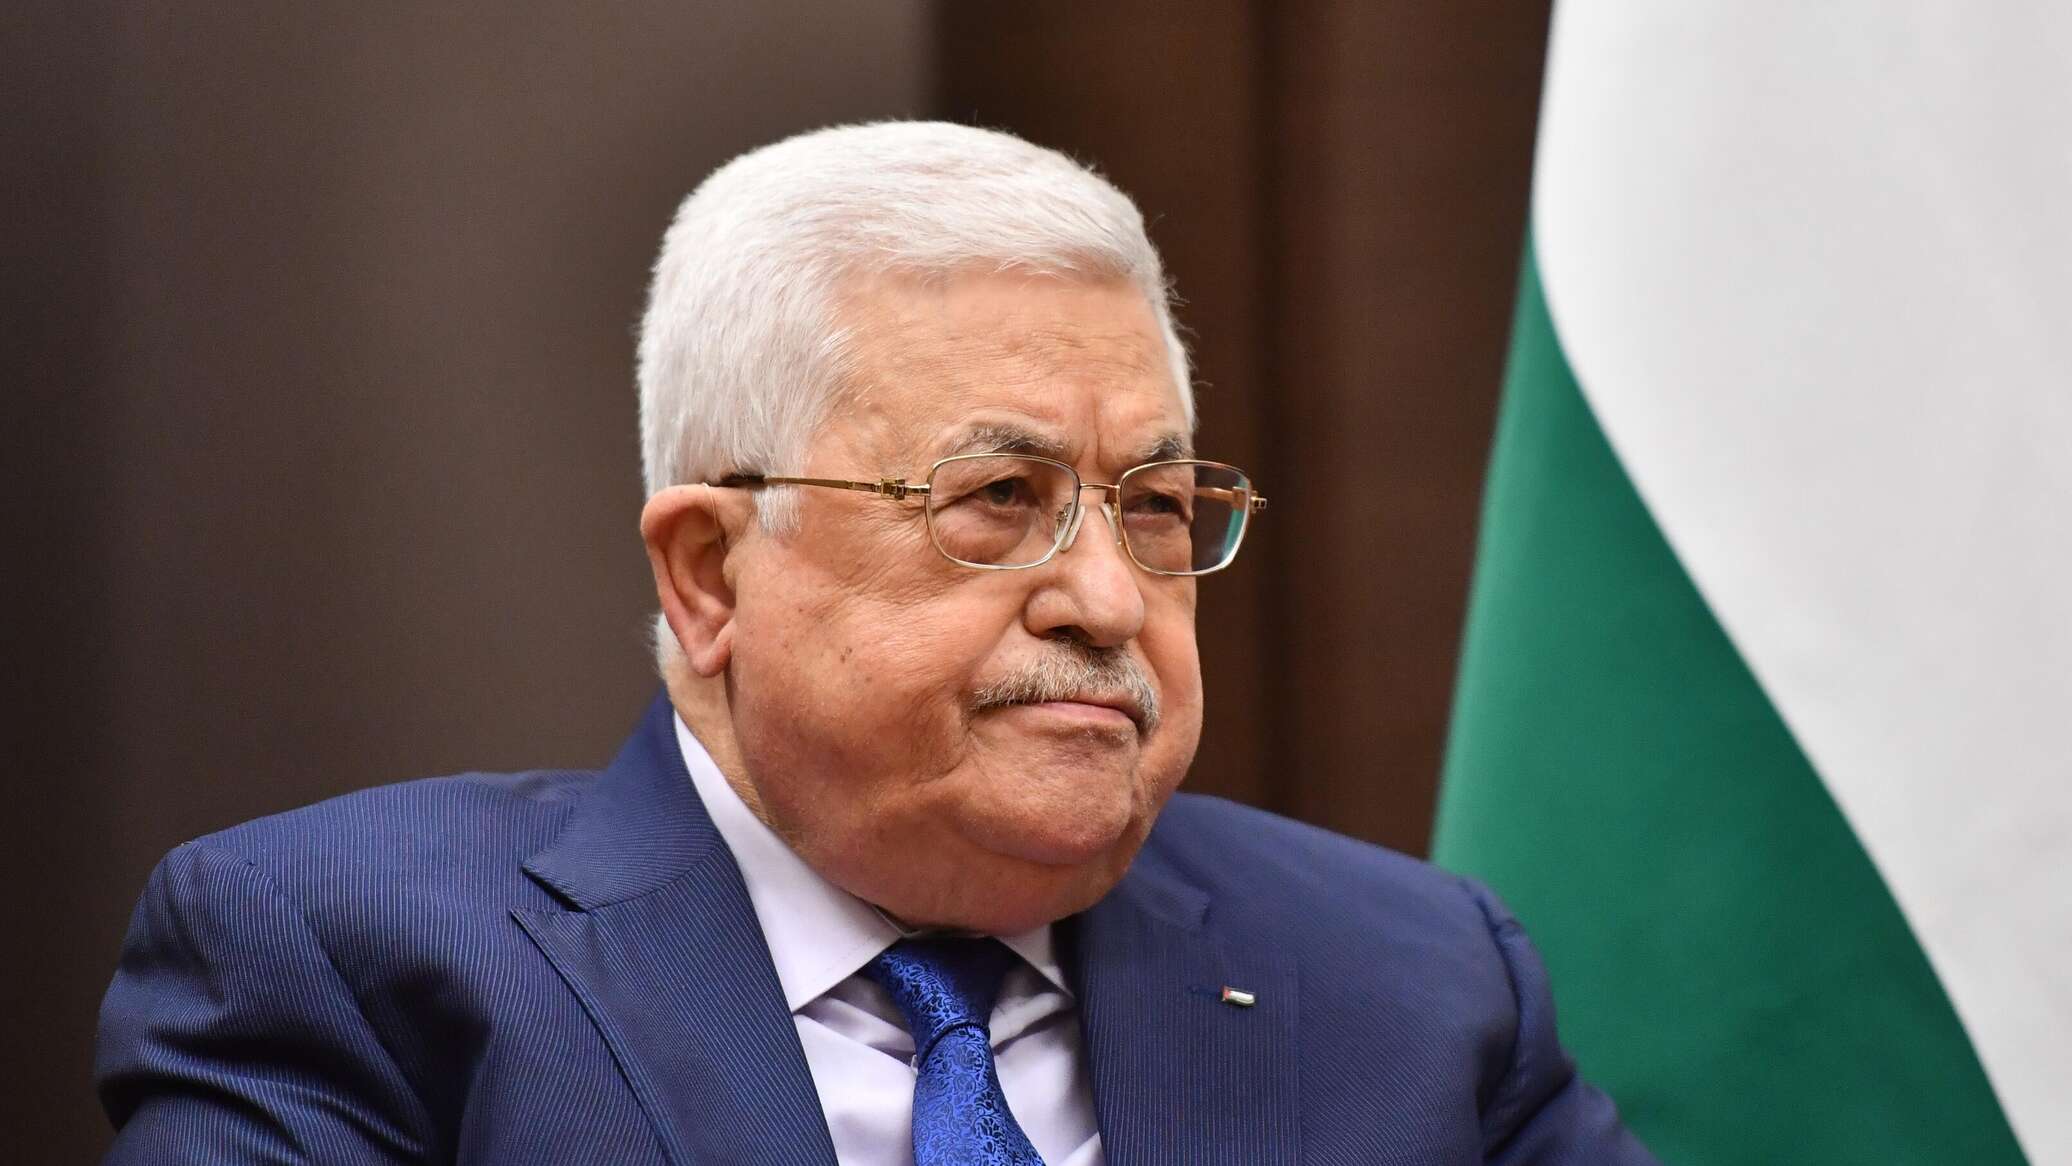 الرئيس الفلسطيني: أفعال حماس لا تمثل الشعب وأدعو لإطلاق سراح المدنيين والأسرى